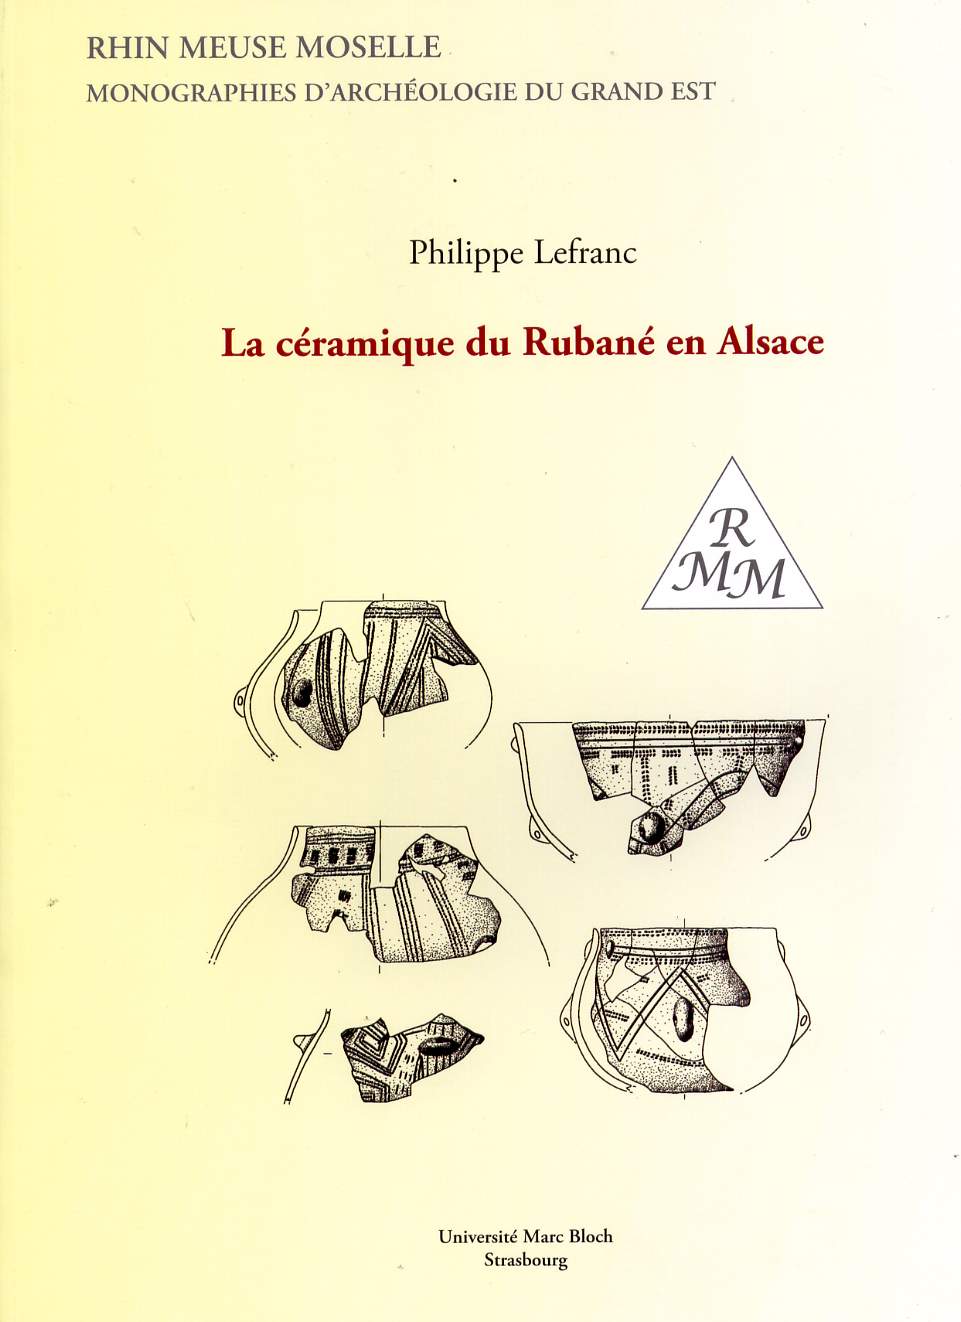 La céramique du Rubané en Alsace, (Rhin Meuse Moselle, Monographies d'archéologie du Grand Est, 2), 2007, 325 p., nbr. pl.